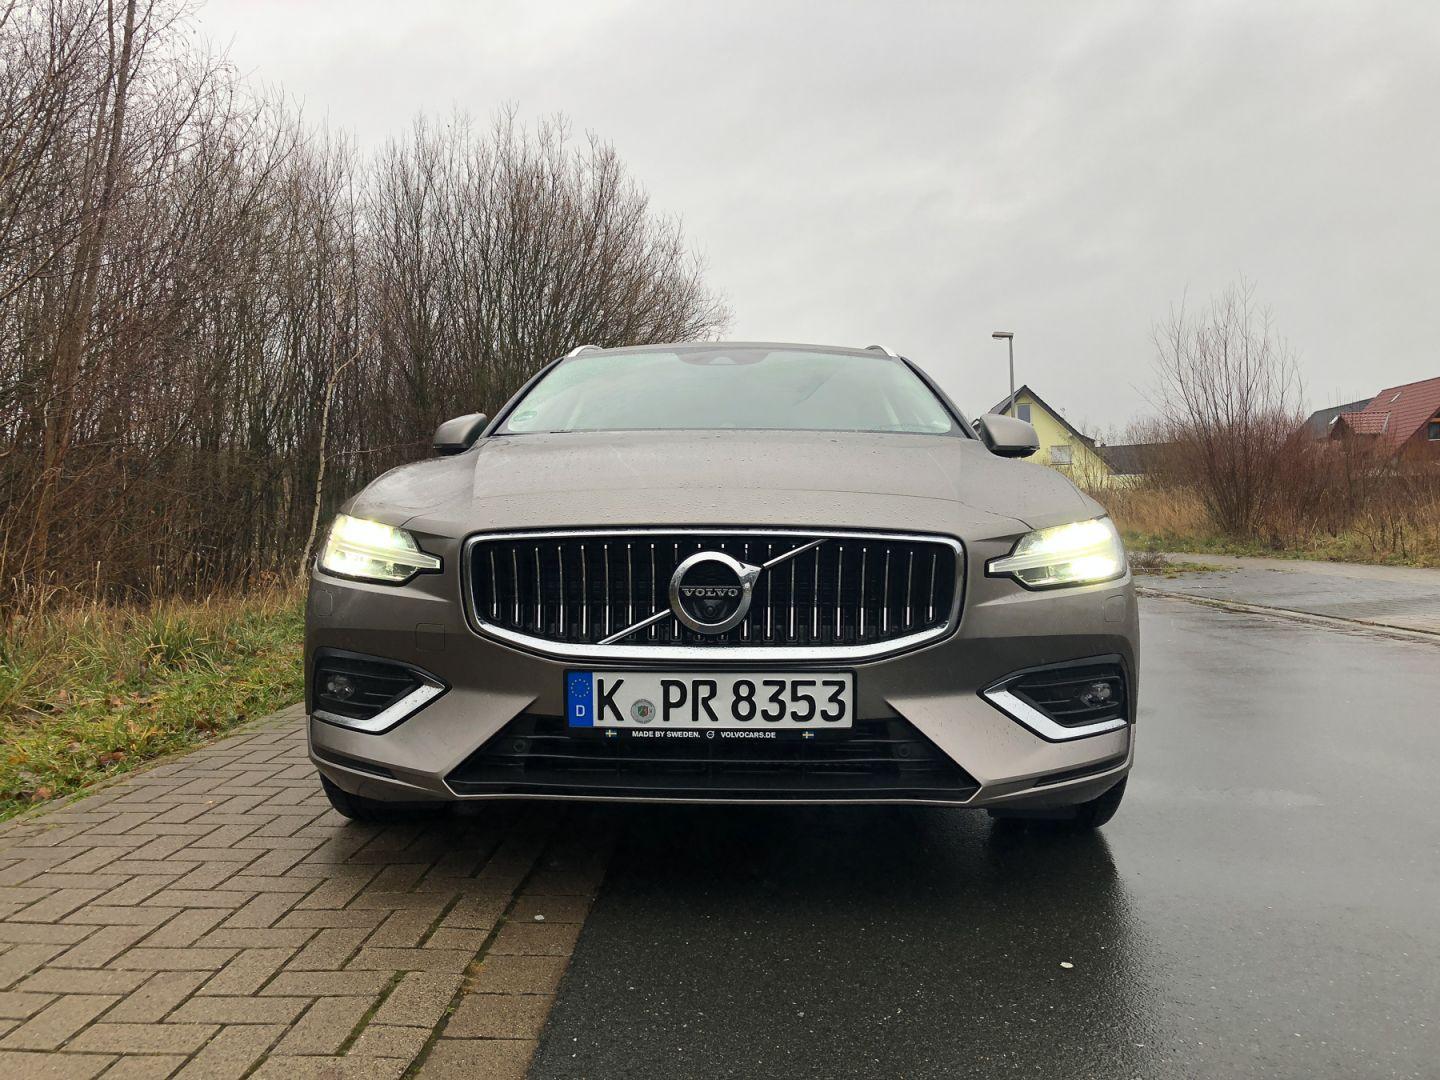 2019 Volvo V60 D4 Fahrbericht